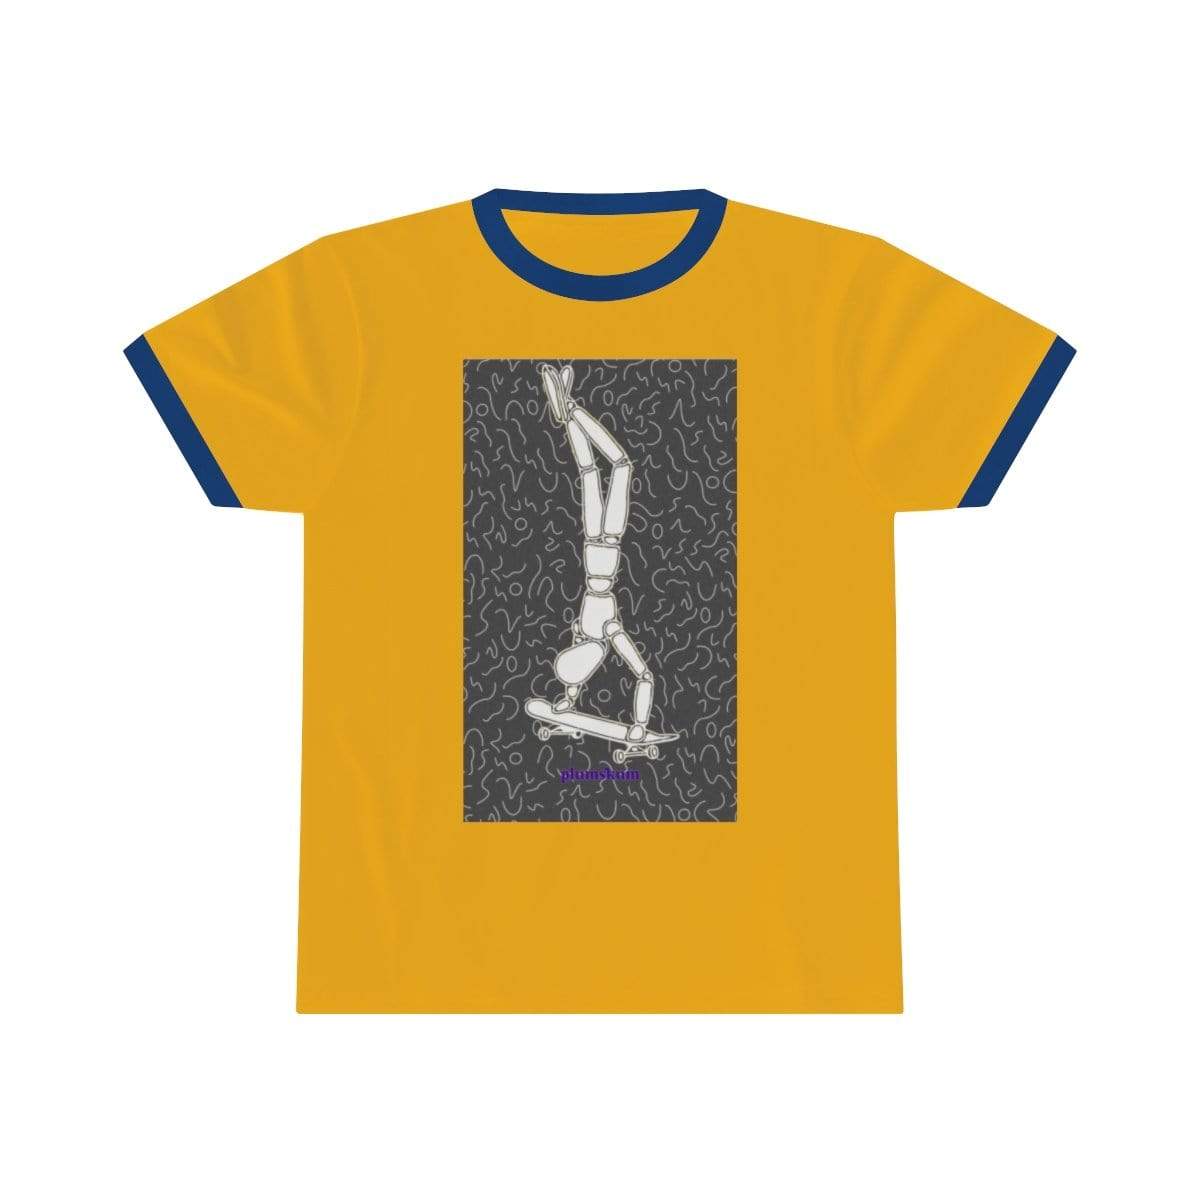 Printify T-Shirt S / Gold / Royal Plumskum Skater Unisex Ringer Tee